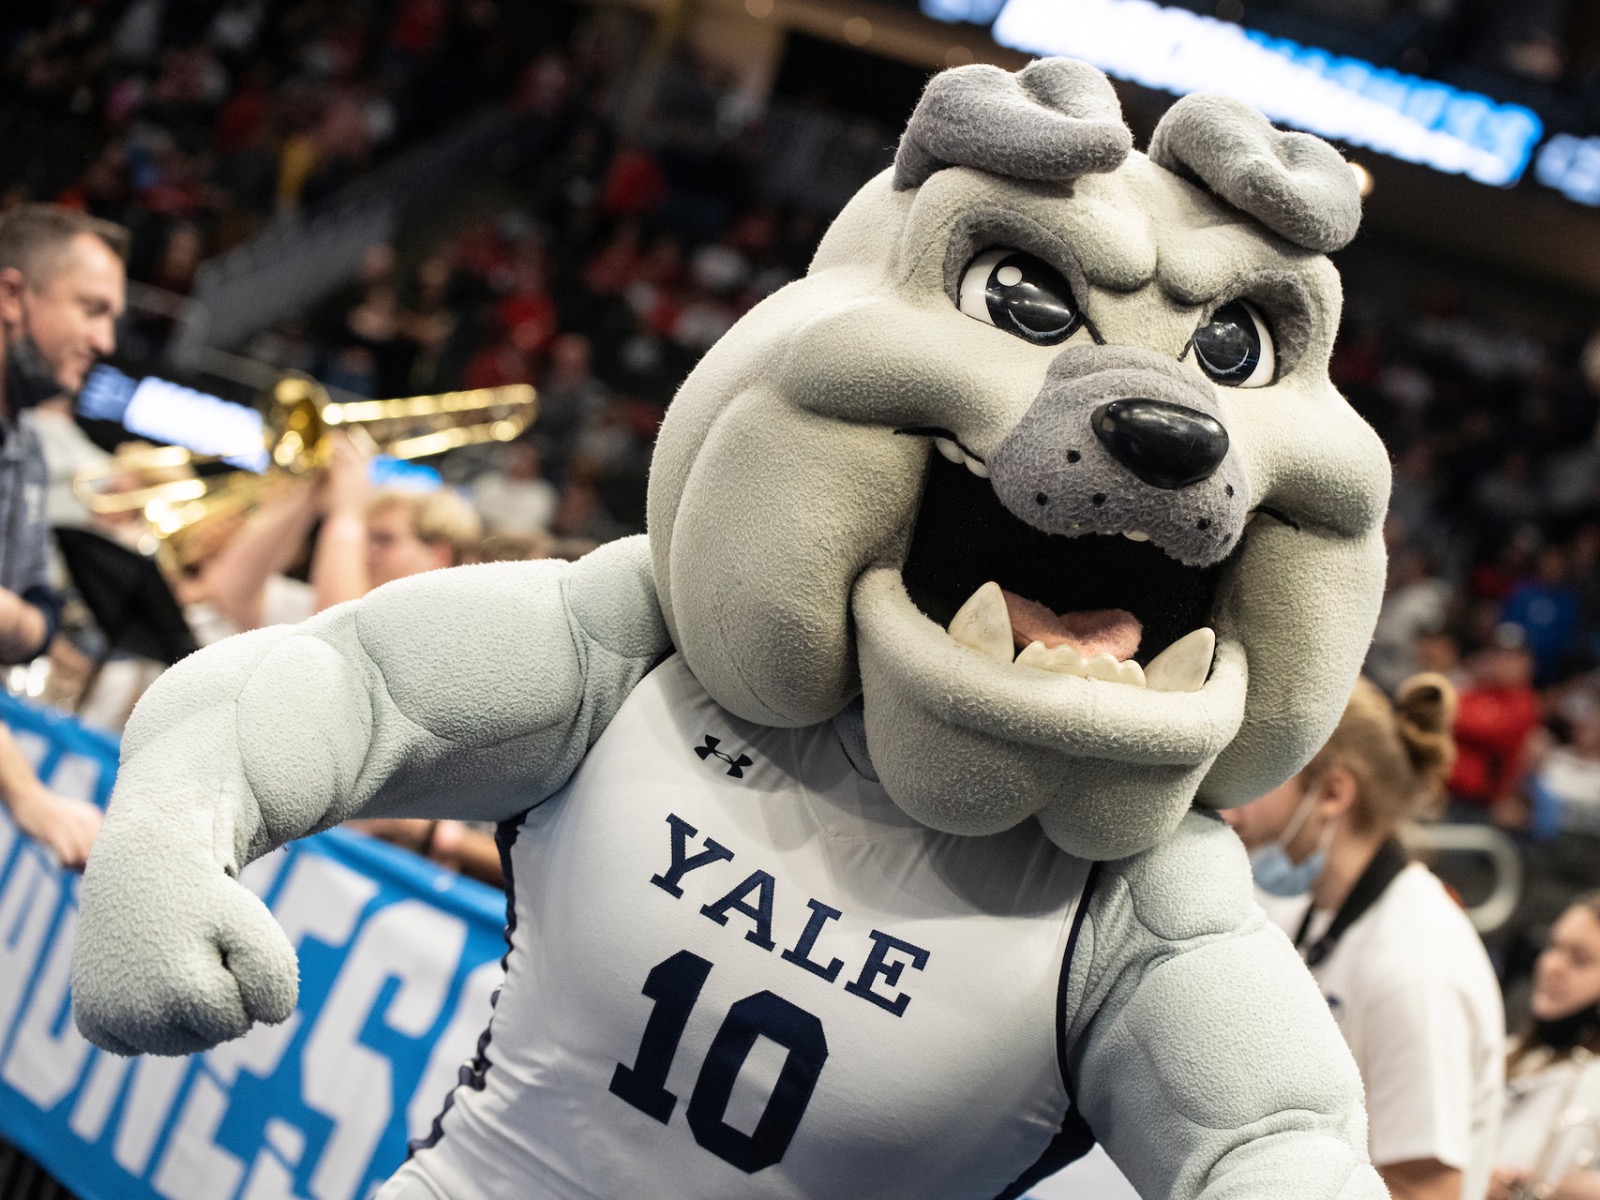 Yale mascot